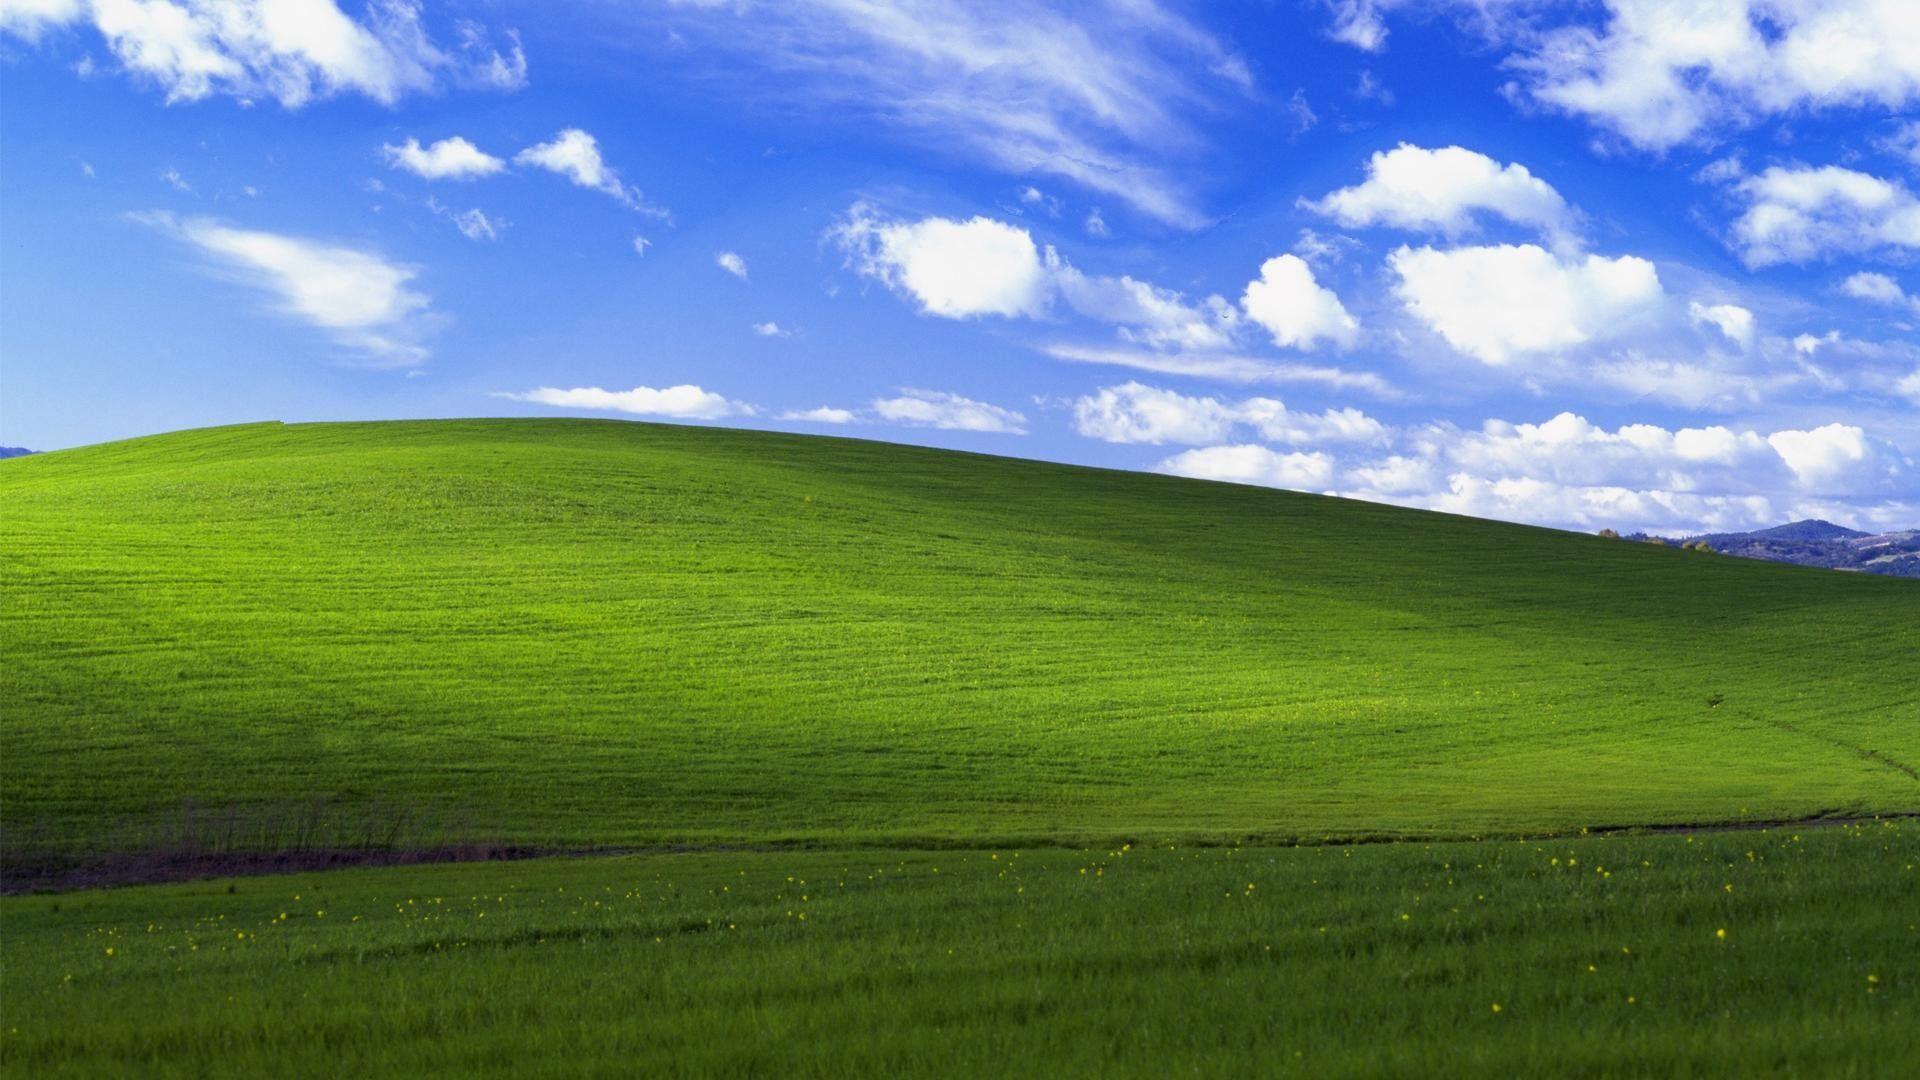 Hình ảnh nền Desktop Windows XP đẹp sẽ khiến bạn cảm thấy như được sống trong một bức tranh tuyệt đẹp. Tinh tế và độc đáo, hình nền này sẽ làm cho máy tính của bạn trở nên đặc biệt hơn. Hãy chắc chắn rằng bạn đã tải xuống những hình ảnh đẹp nhất để tạo ra một không gian làm việc đẹp mắt.